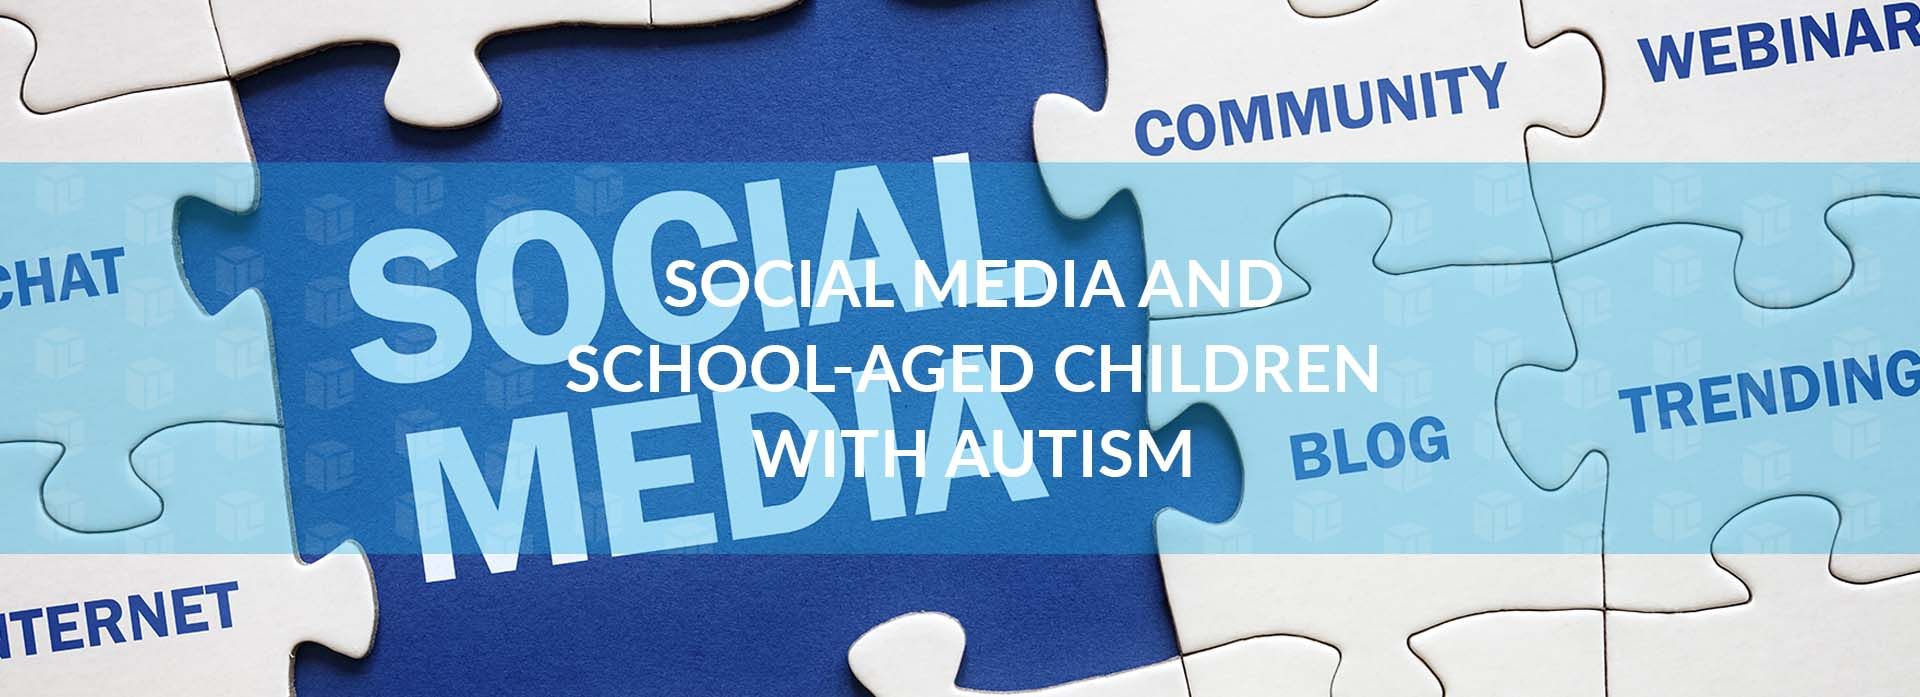 Social Media And School-Aged Children Social Media And School-Aged Children Social Media And School-Aged Children Social Media And School-Aged Children